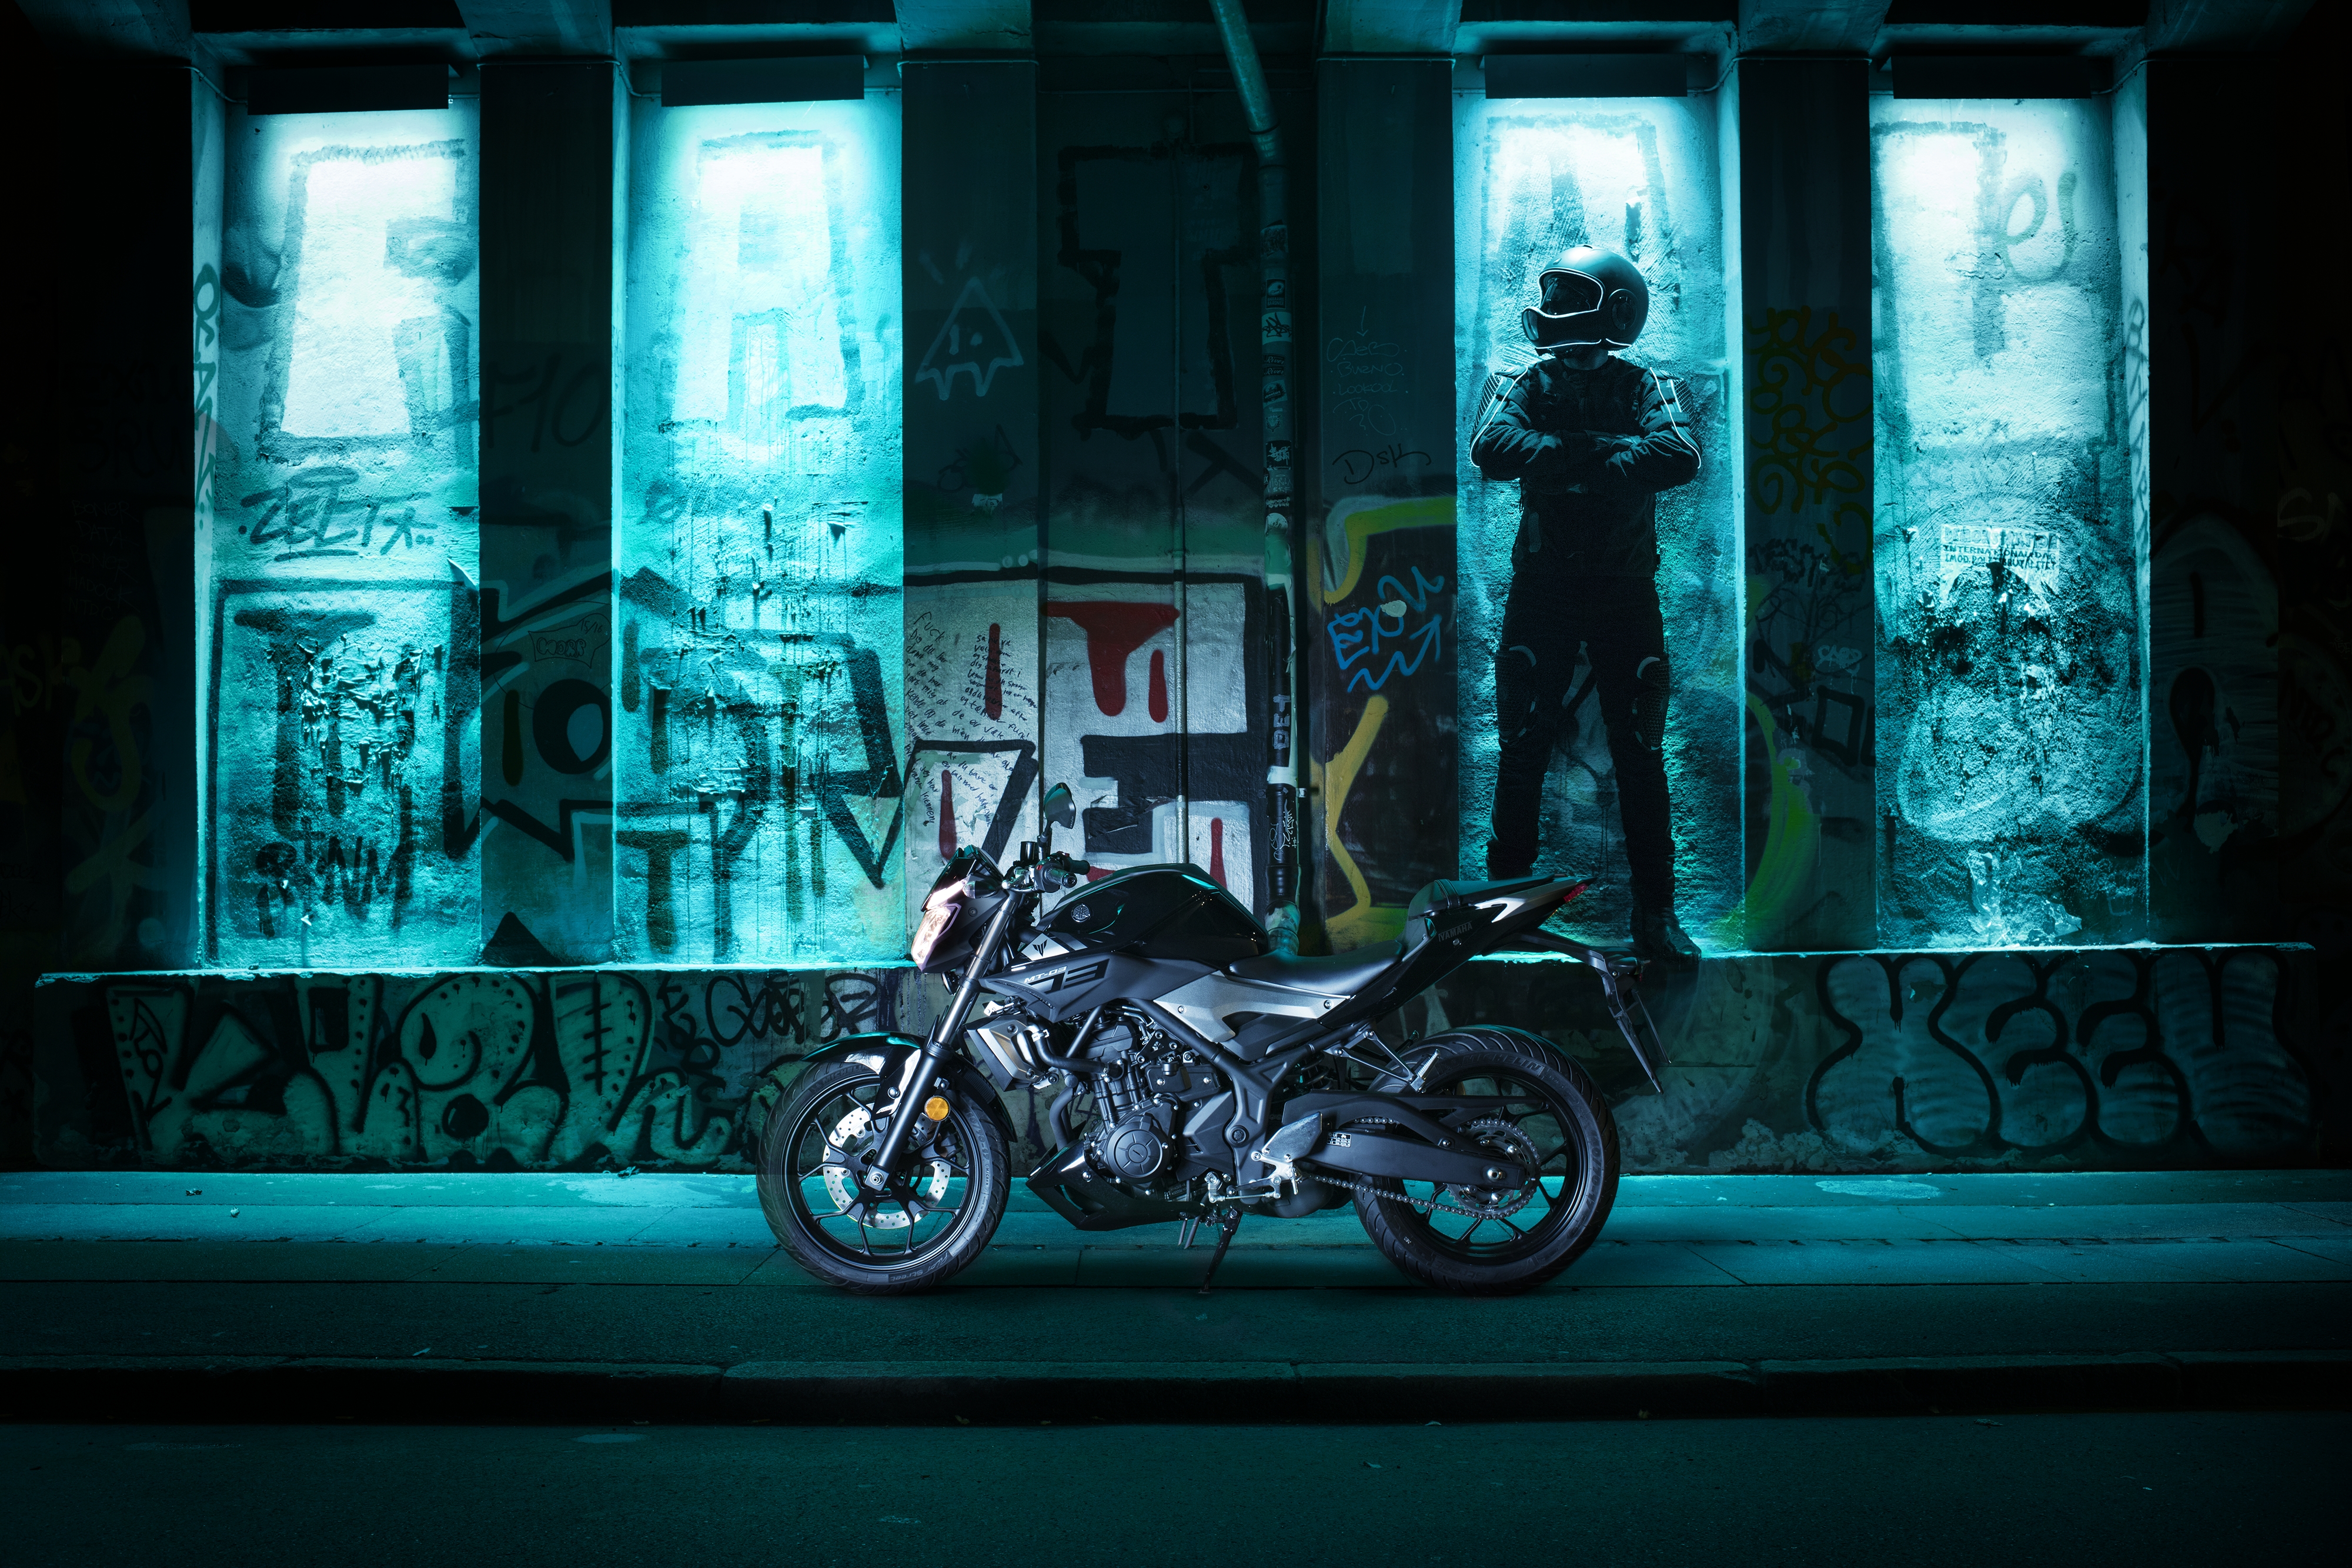 mt 03壁紙,青い,光,車両,オートバイ,夜